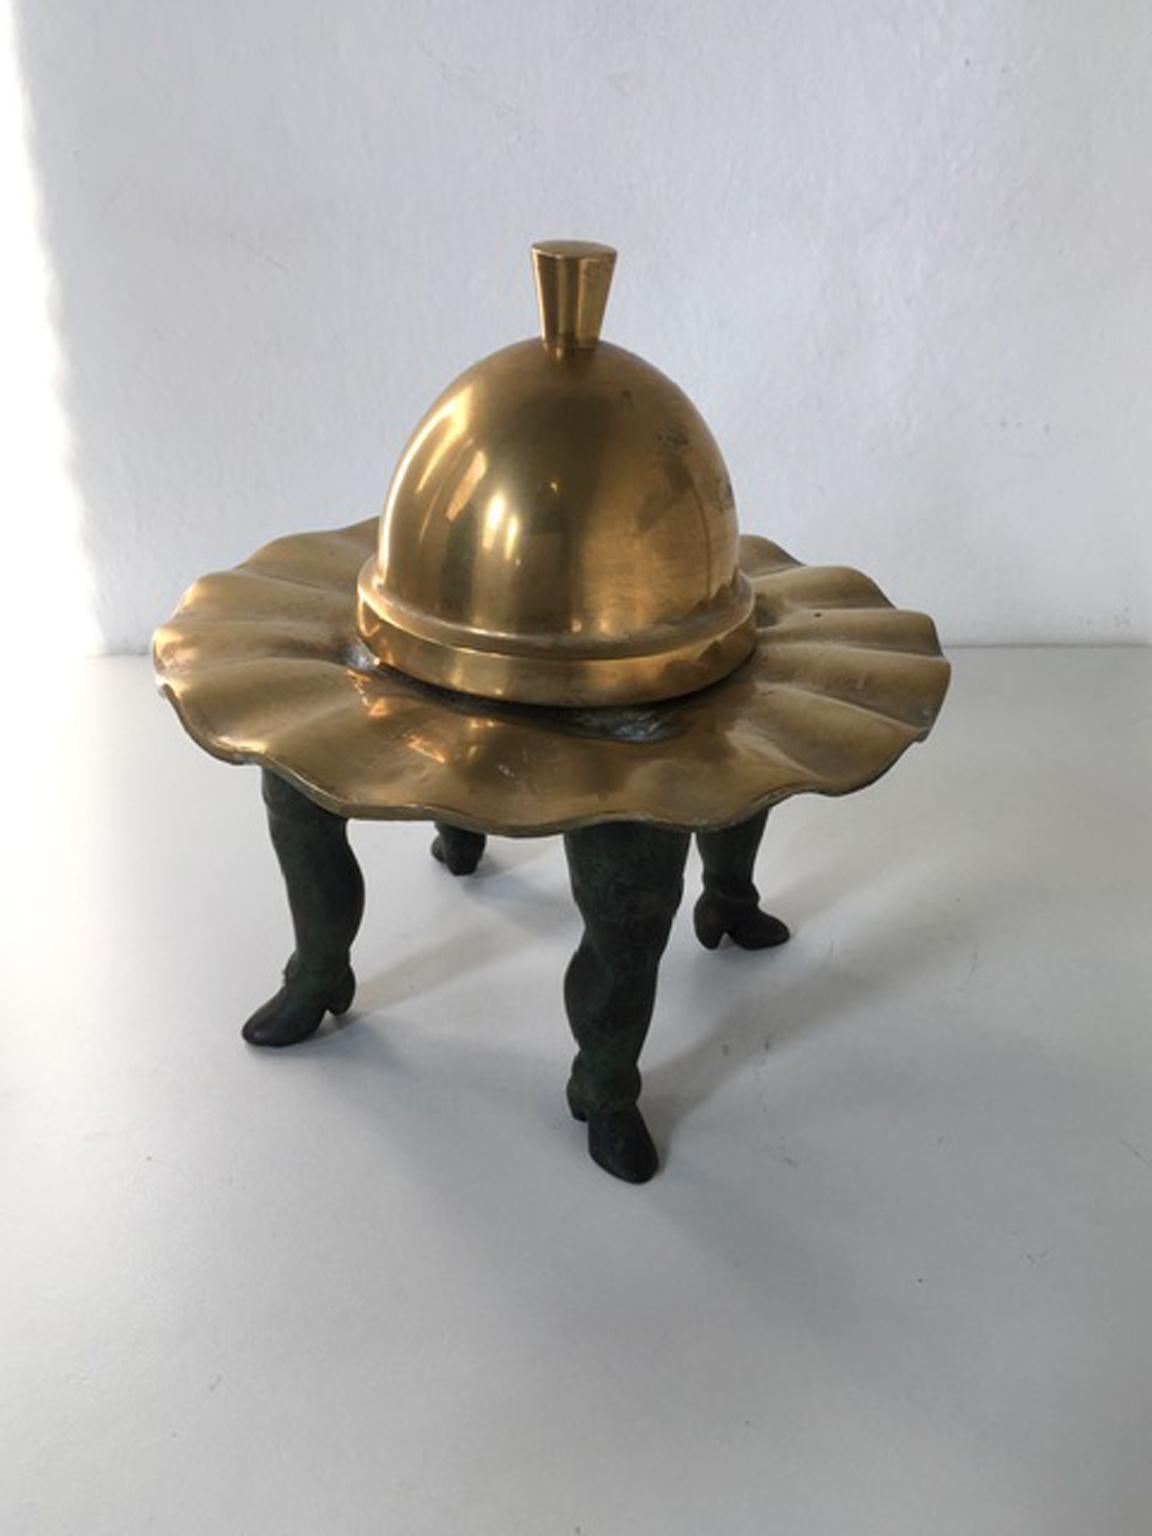 Il s'agit d'une pièce unique (n°6 sur 8 réalisées) de cette charmante œuvre d'art en bronze d'Ugo La Pietra.
Le titre ironique fait partie de la philosophie de l'artiste. La Pietra est un architecte génial, il a remporté un Golden Compass Award.